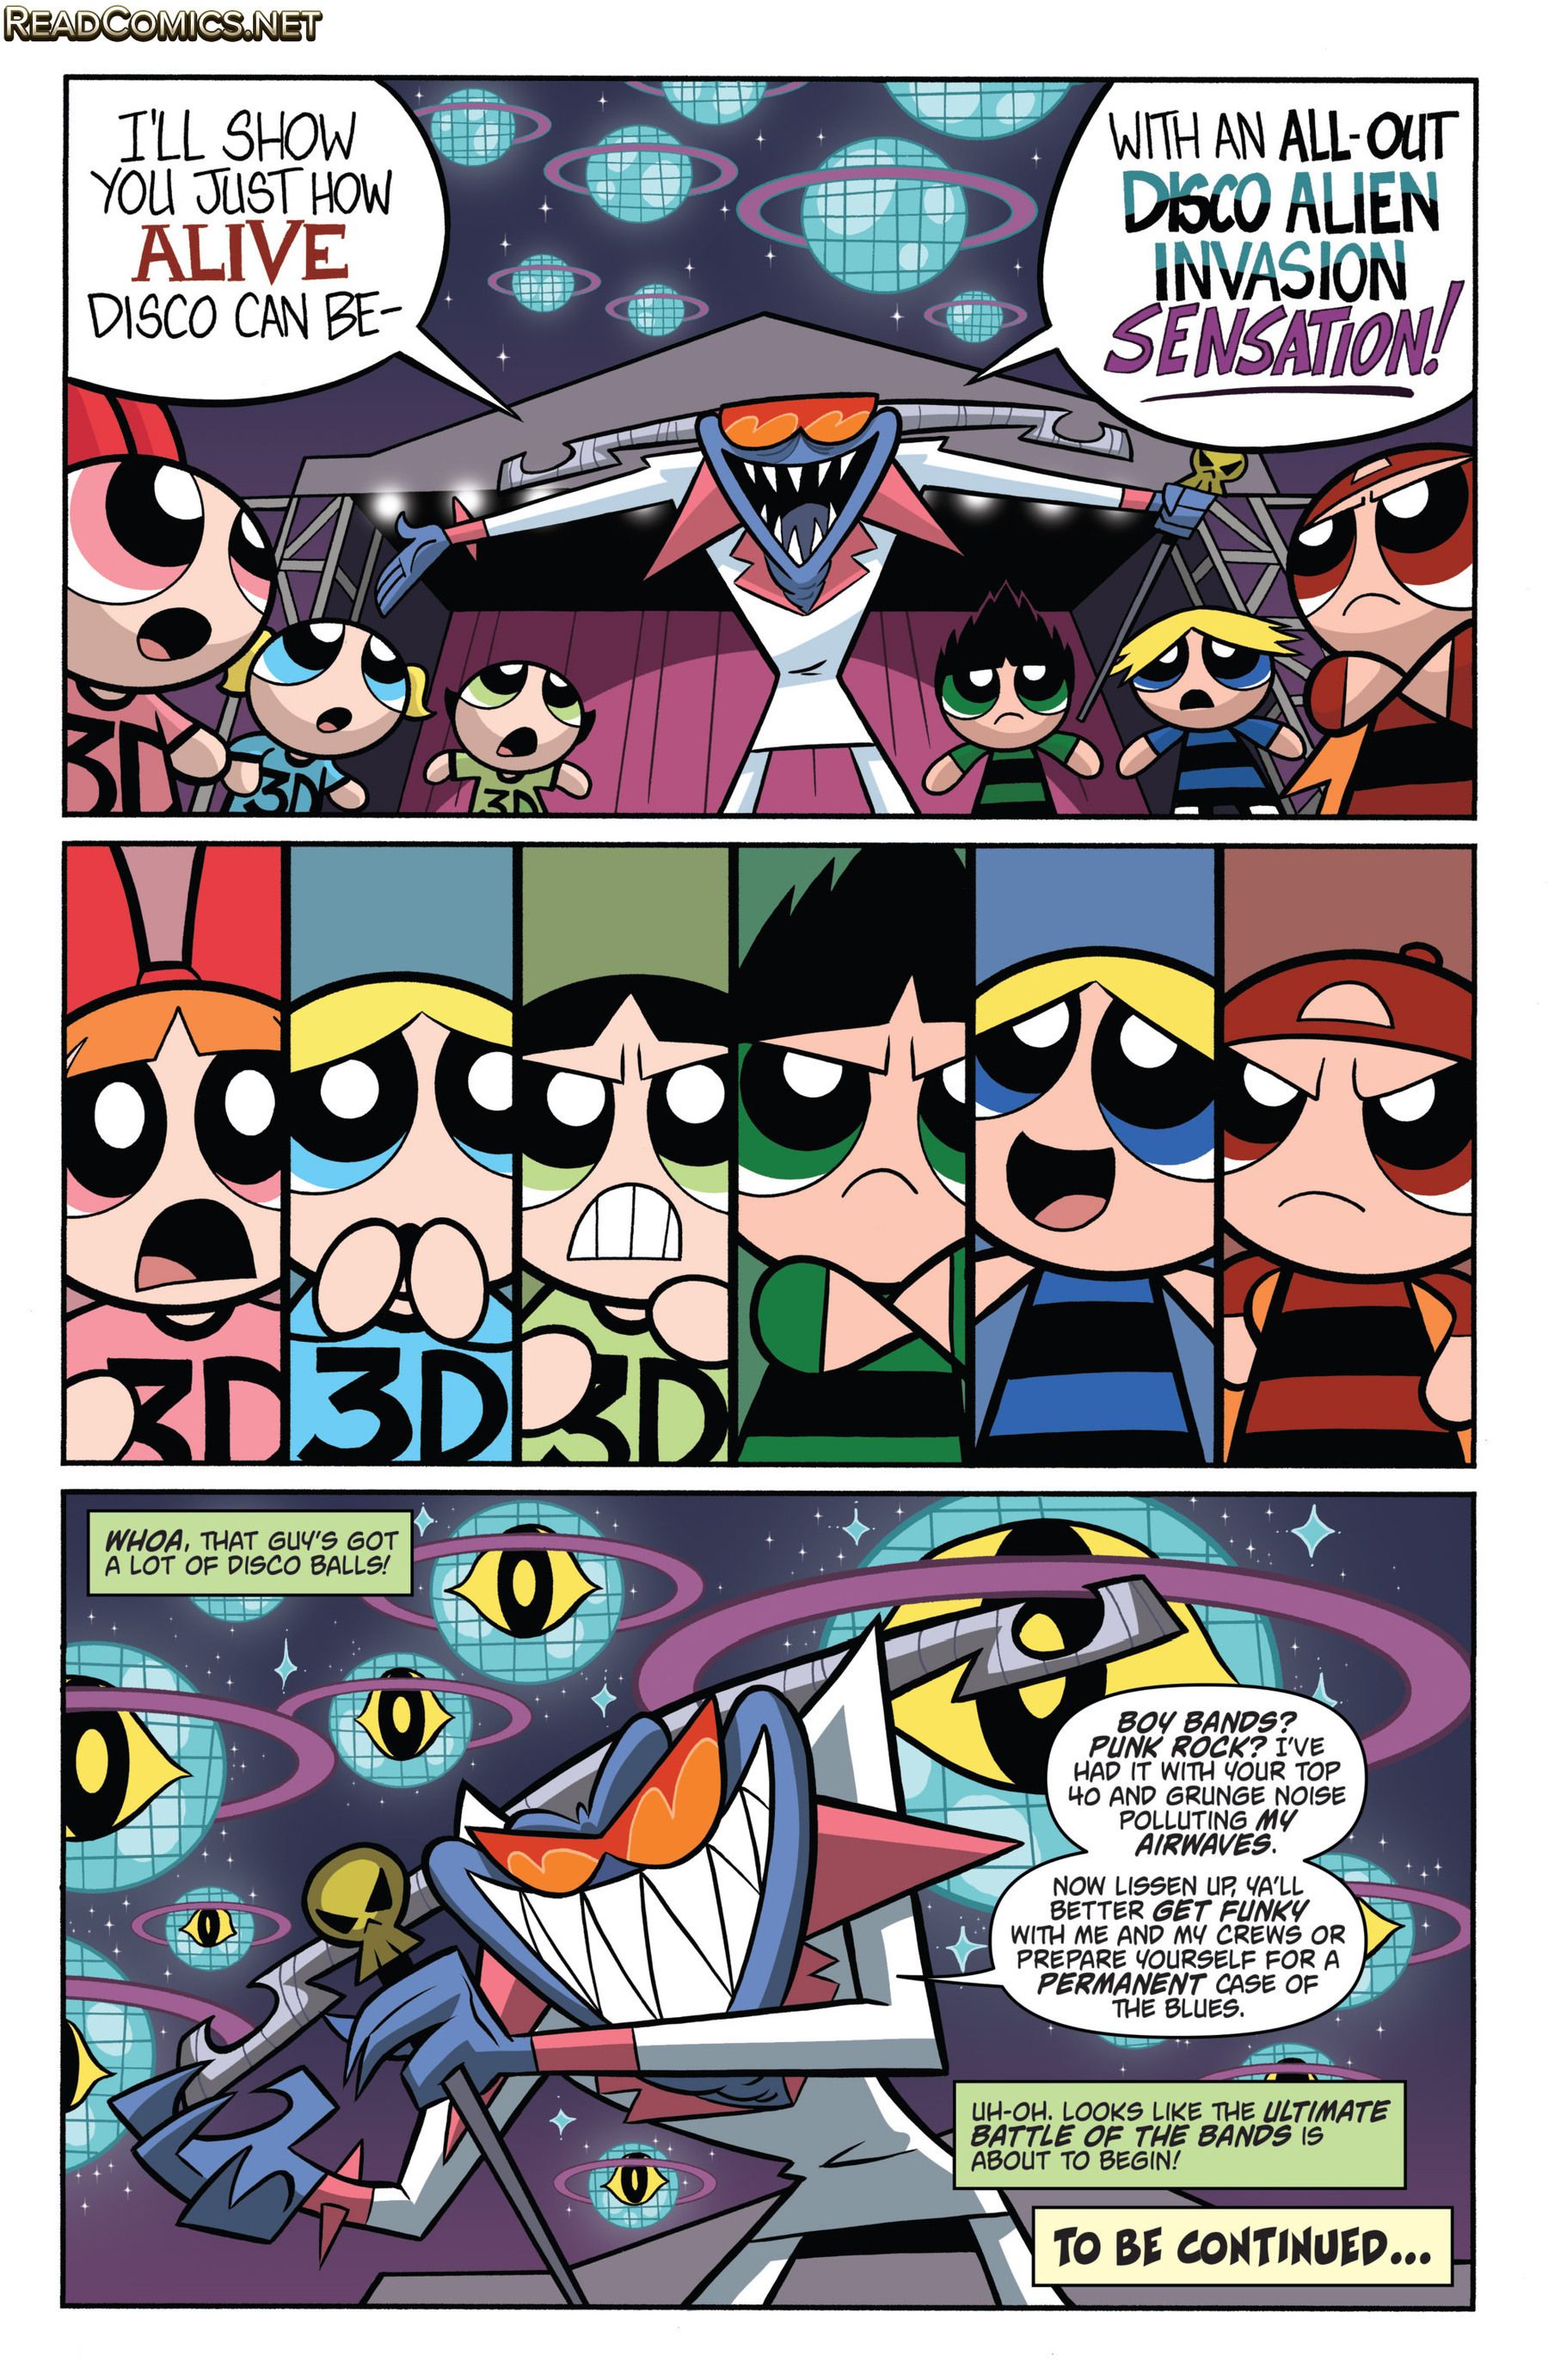 Powerpuff girls comic strips